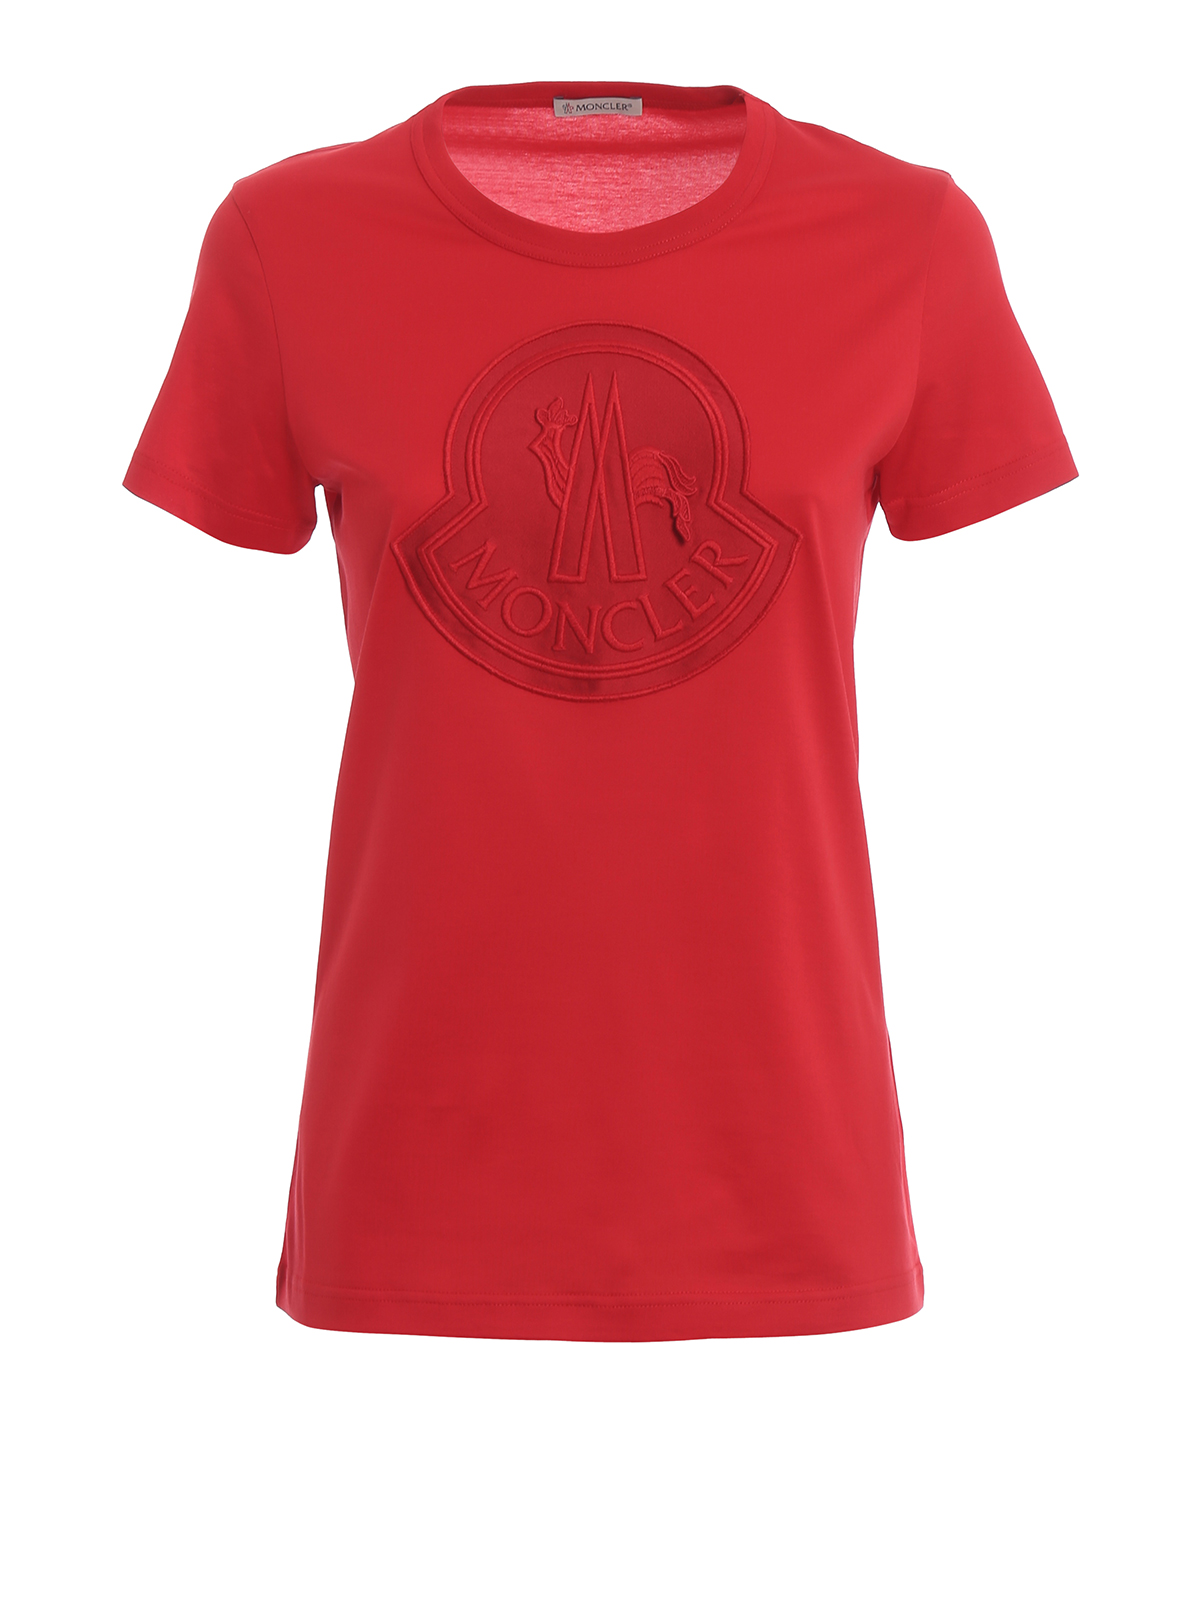 moncler t shirt red logo